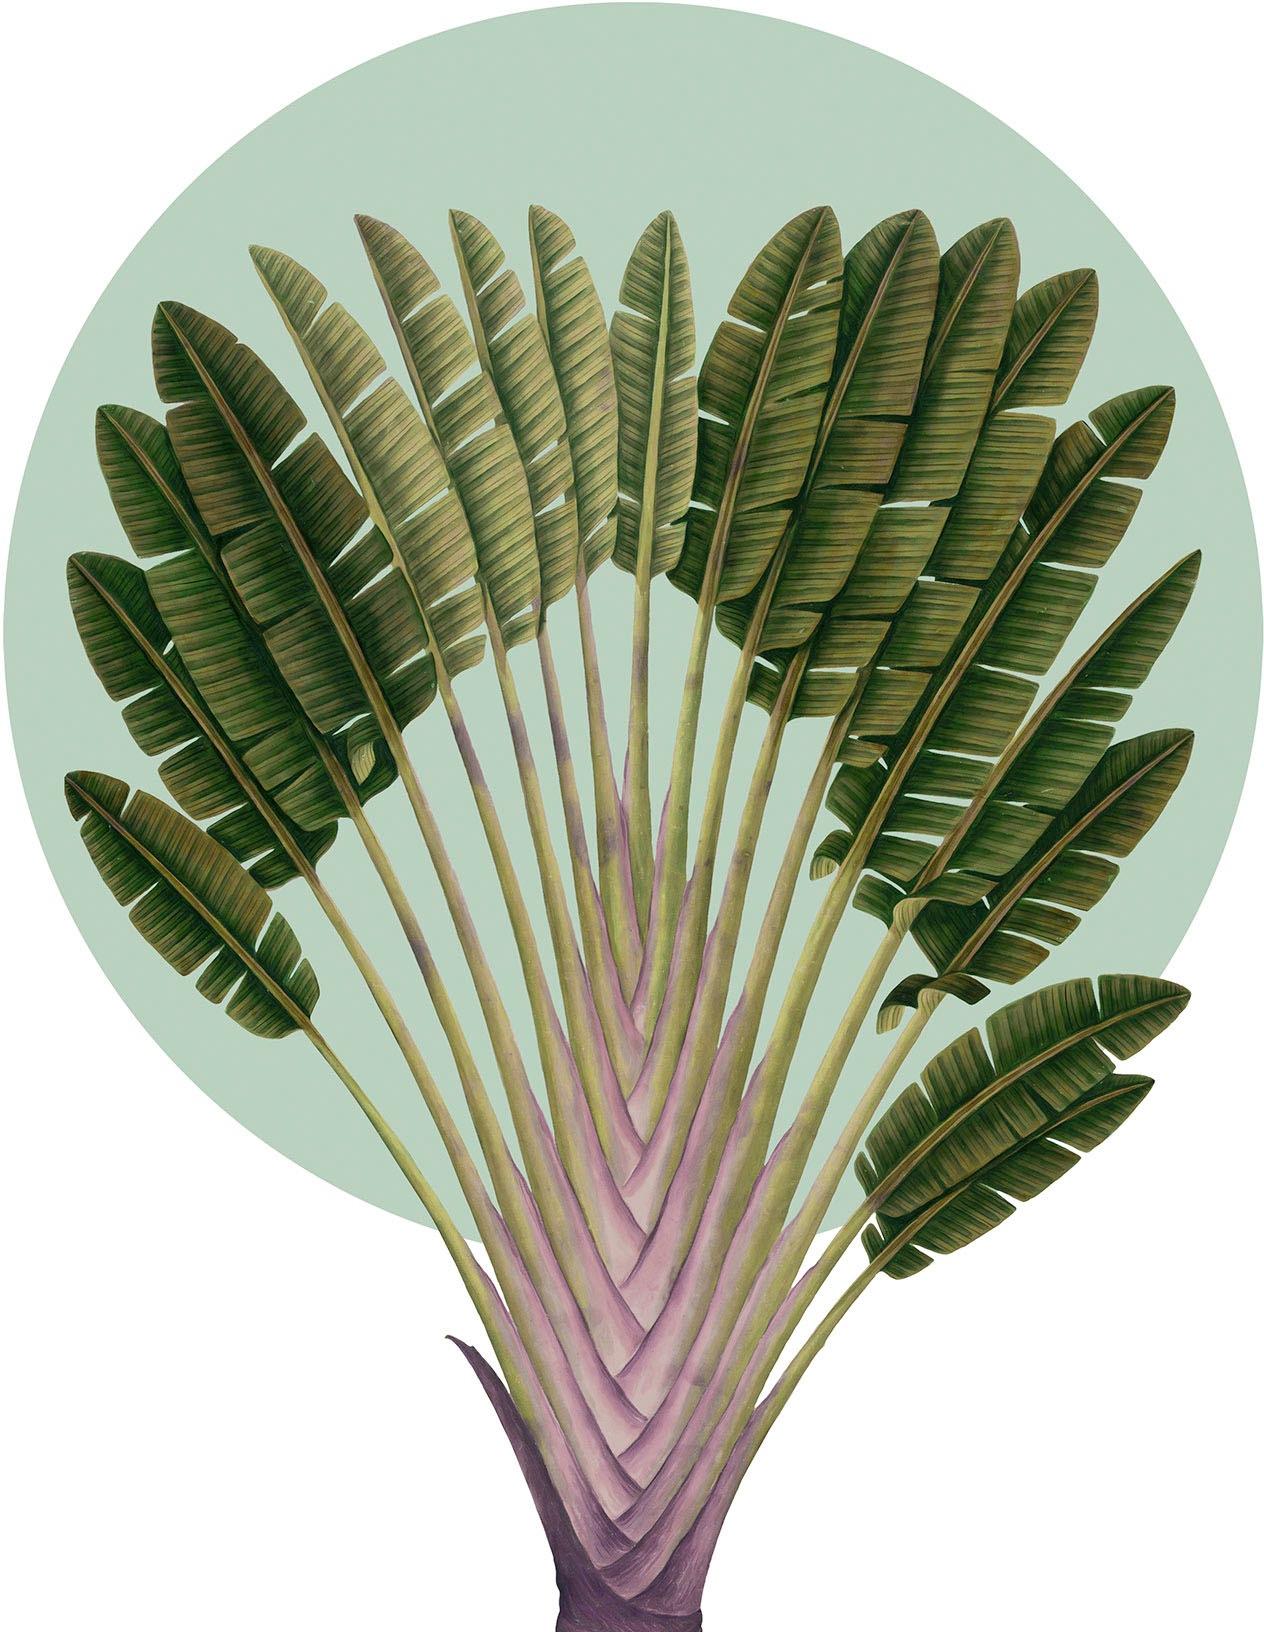 Komar Wandbild »Botanical Garden Pinnate Palm«, (1 St.), Deutsches Premium-Poster Fotopapier mit seidenmatter Oberfläche und hoher Lichtbeständigkeit. Für fotorealistische Drucke mit gestochen scharfen Details und hervorragender Farbbrillanz.